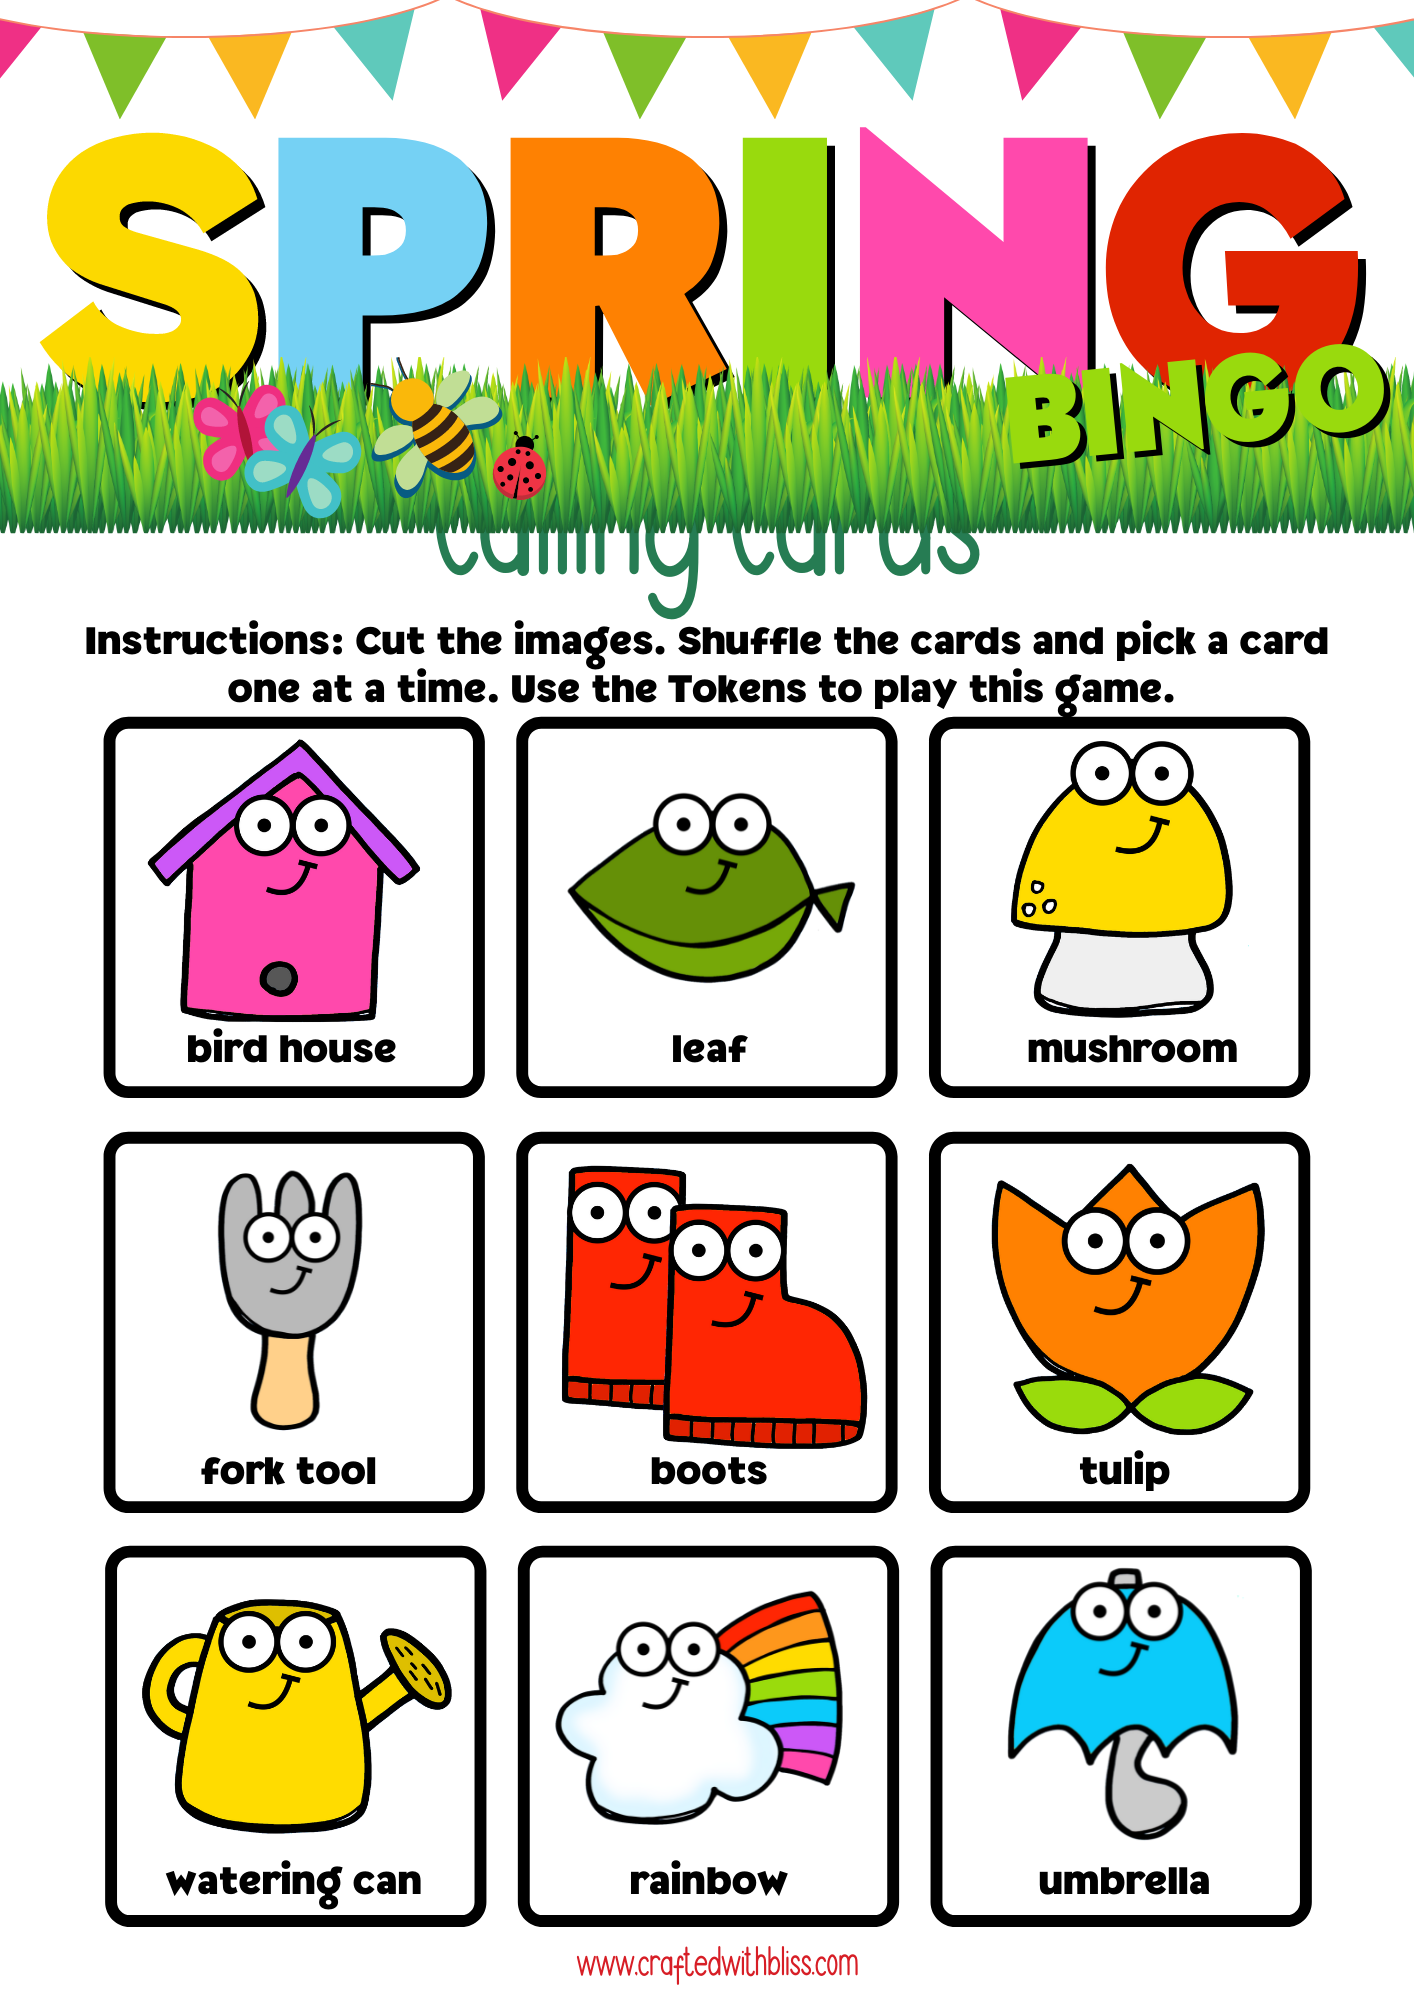 10 Spring BINGO For Preschool-Kindergarten